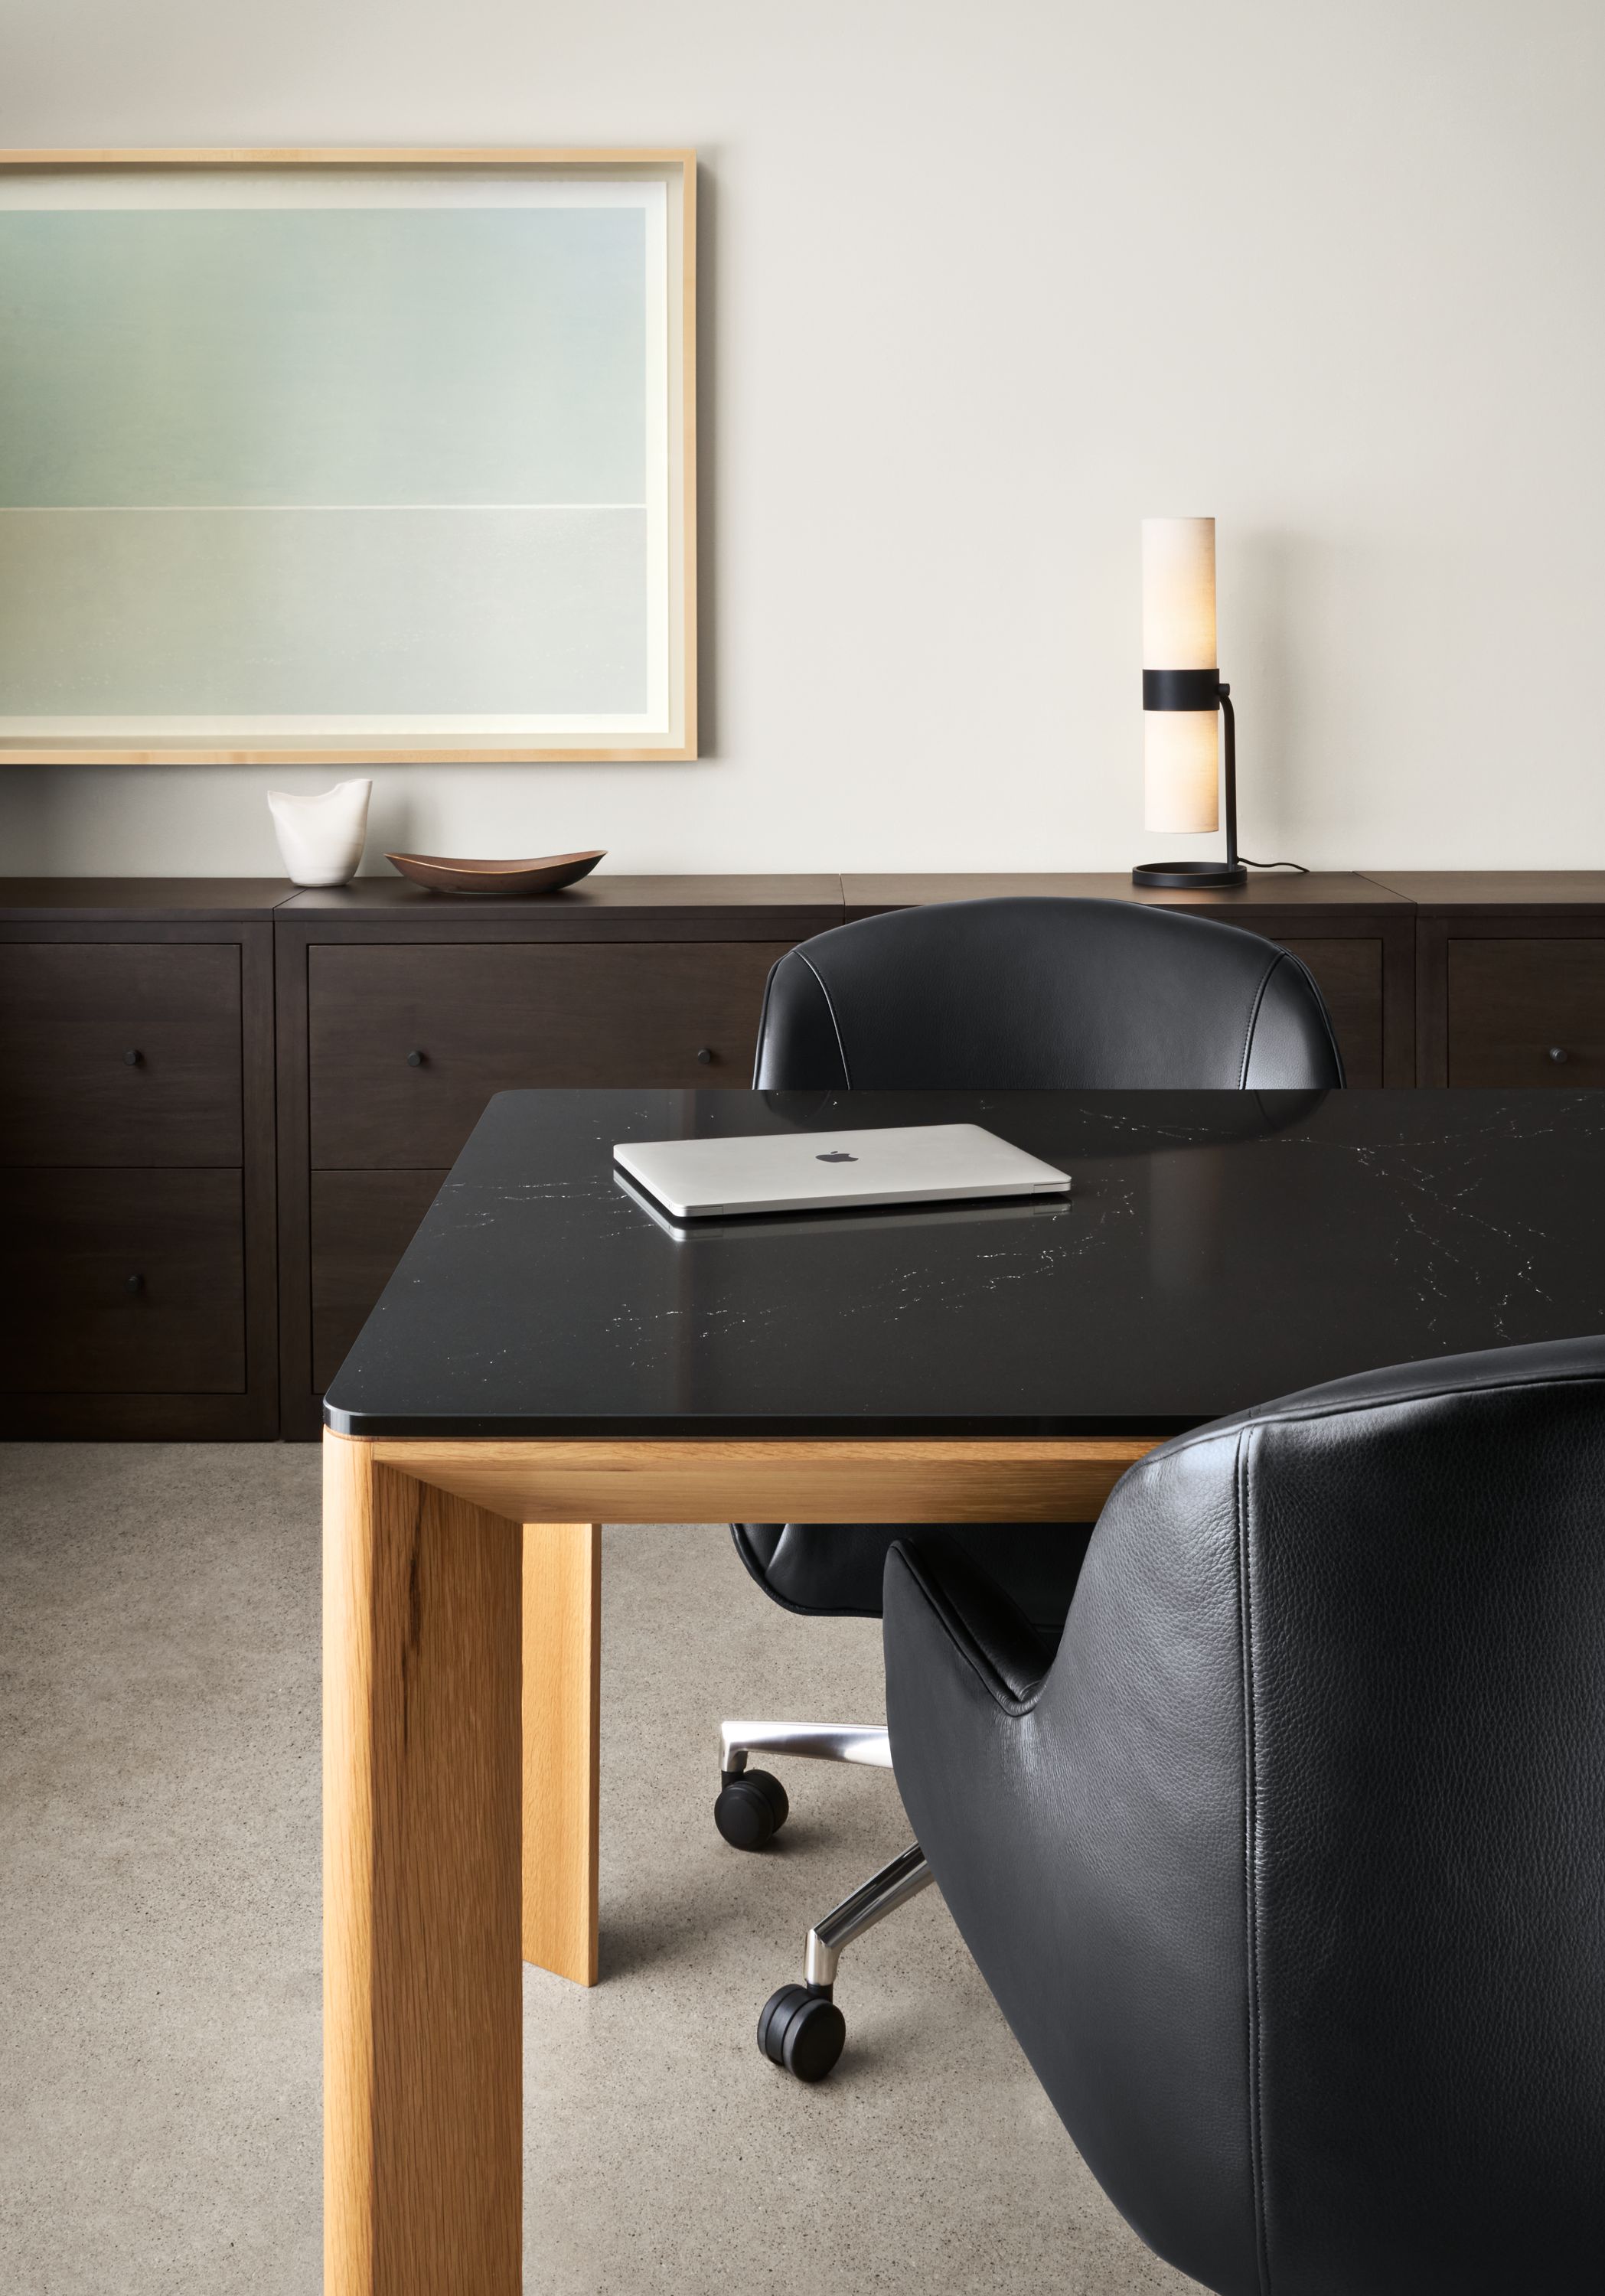 Pren Desks with Cambria Quartz Tops - Modern Office Furniture - Room & Board